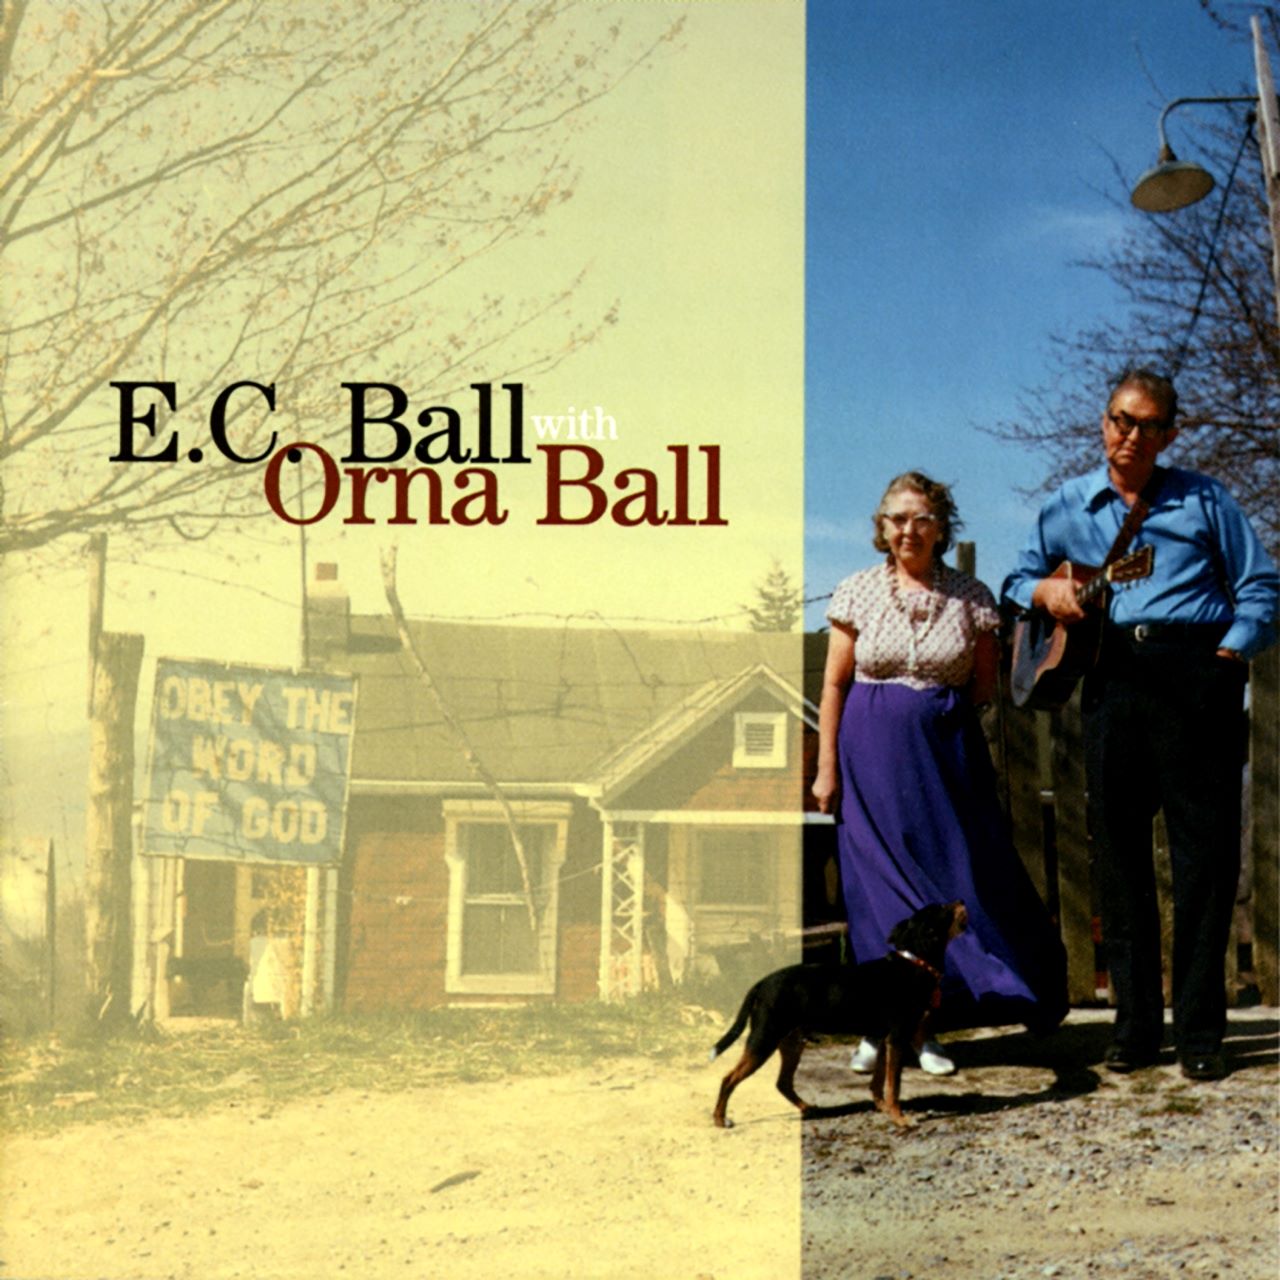 E.C. Ball - E.C. Ball With Orna Ball cover album